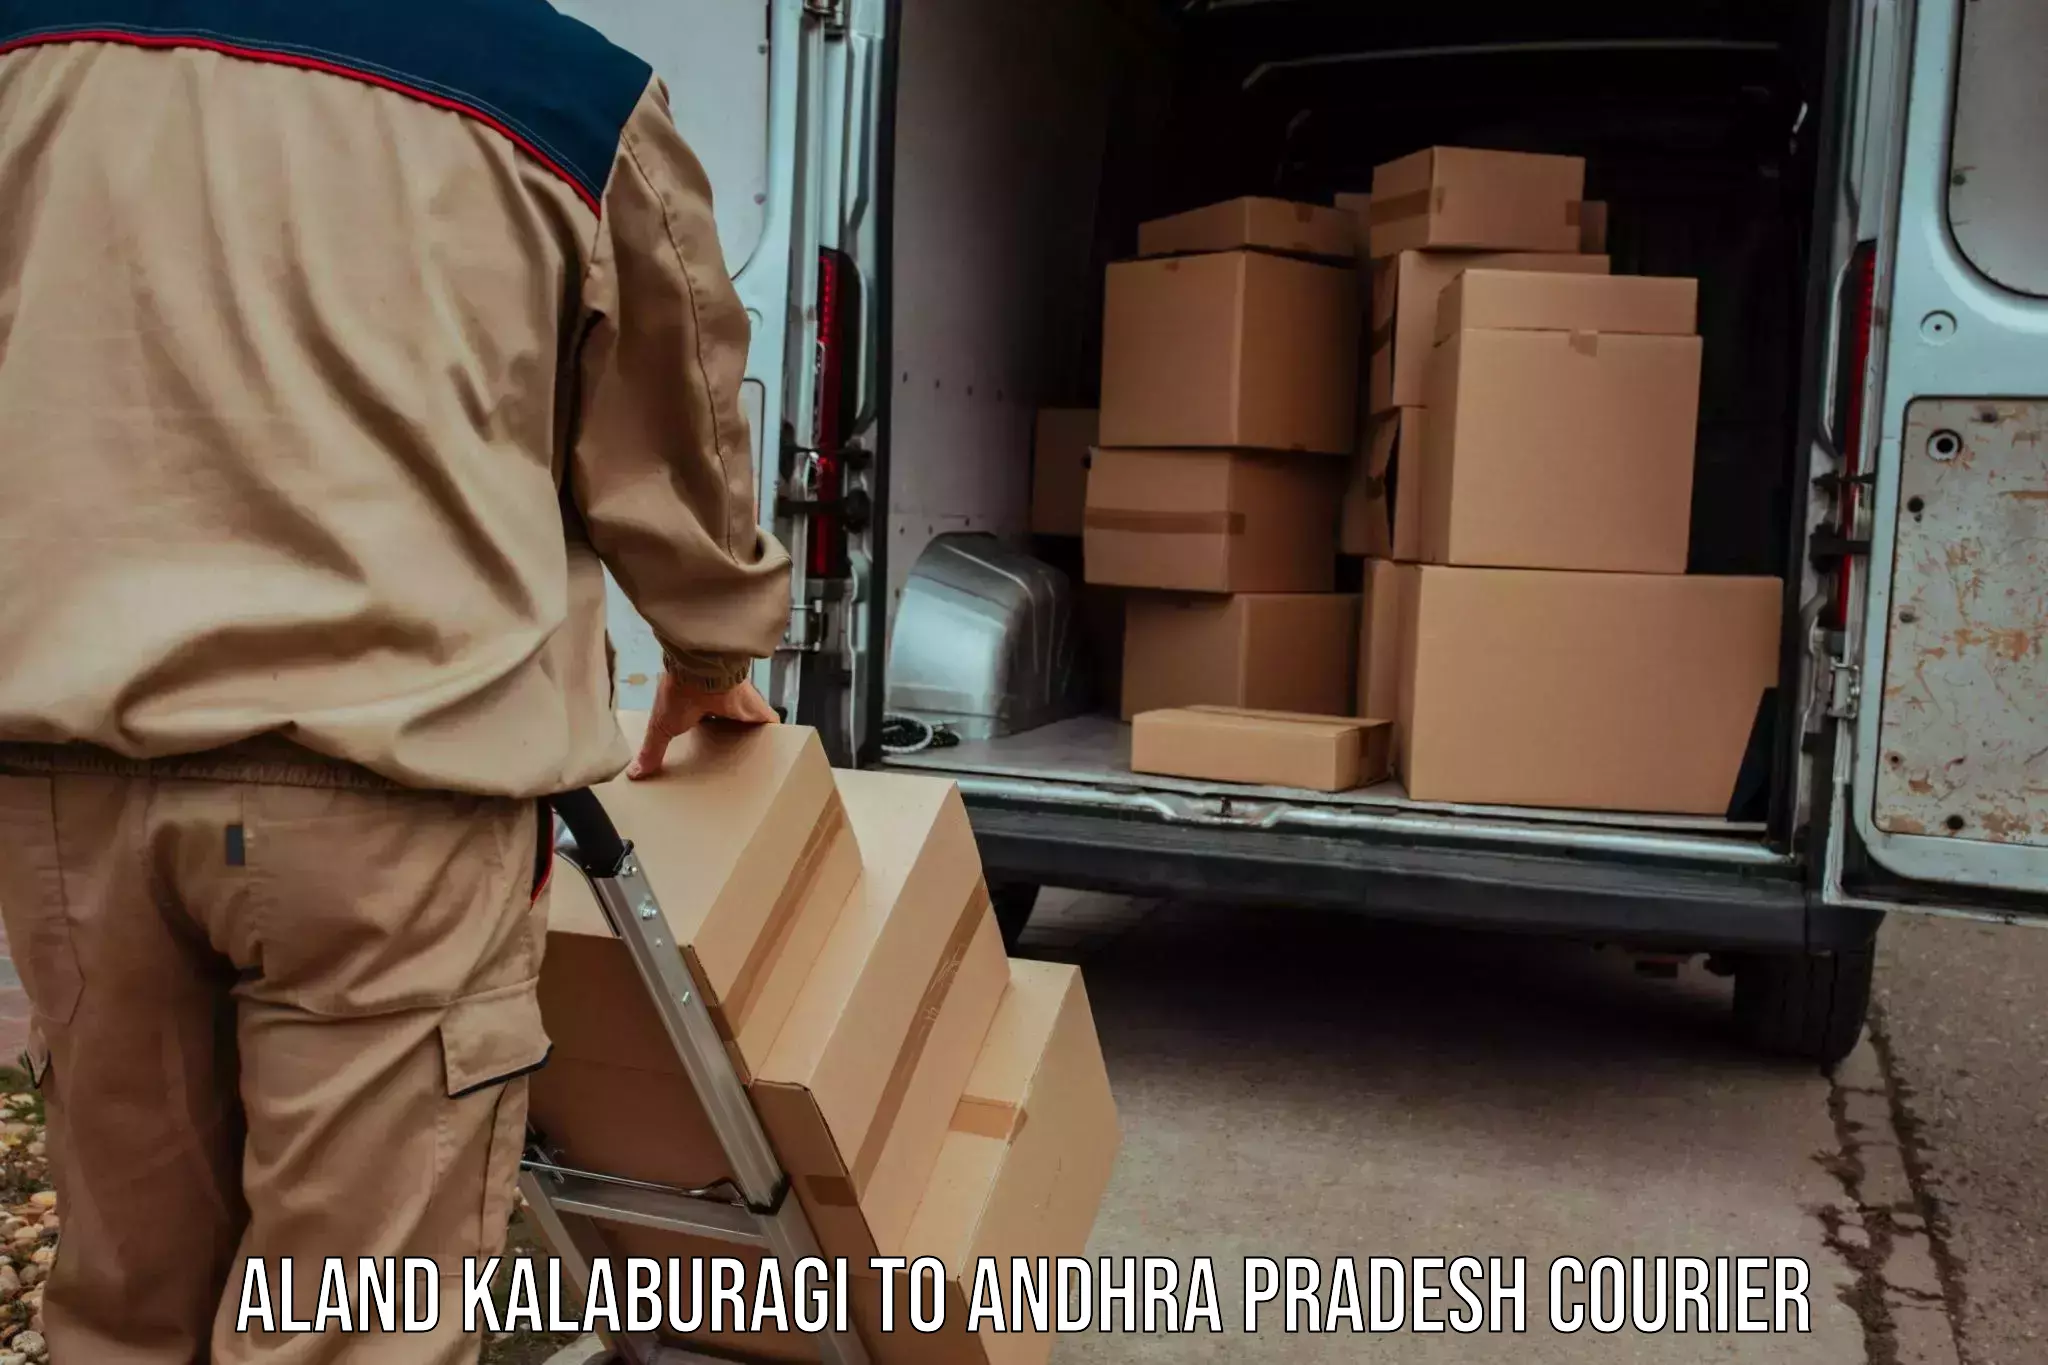 Lightweight parcel options Aland Kalaburagi to Palakonda